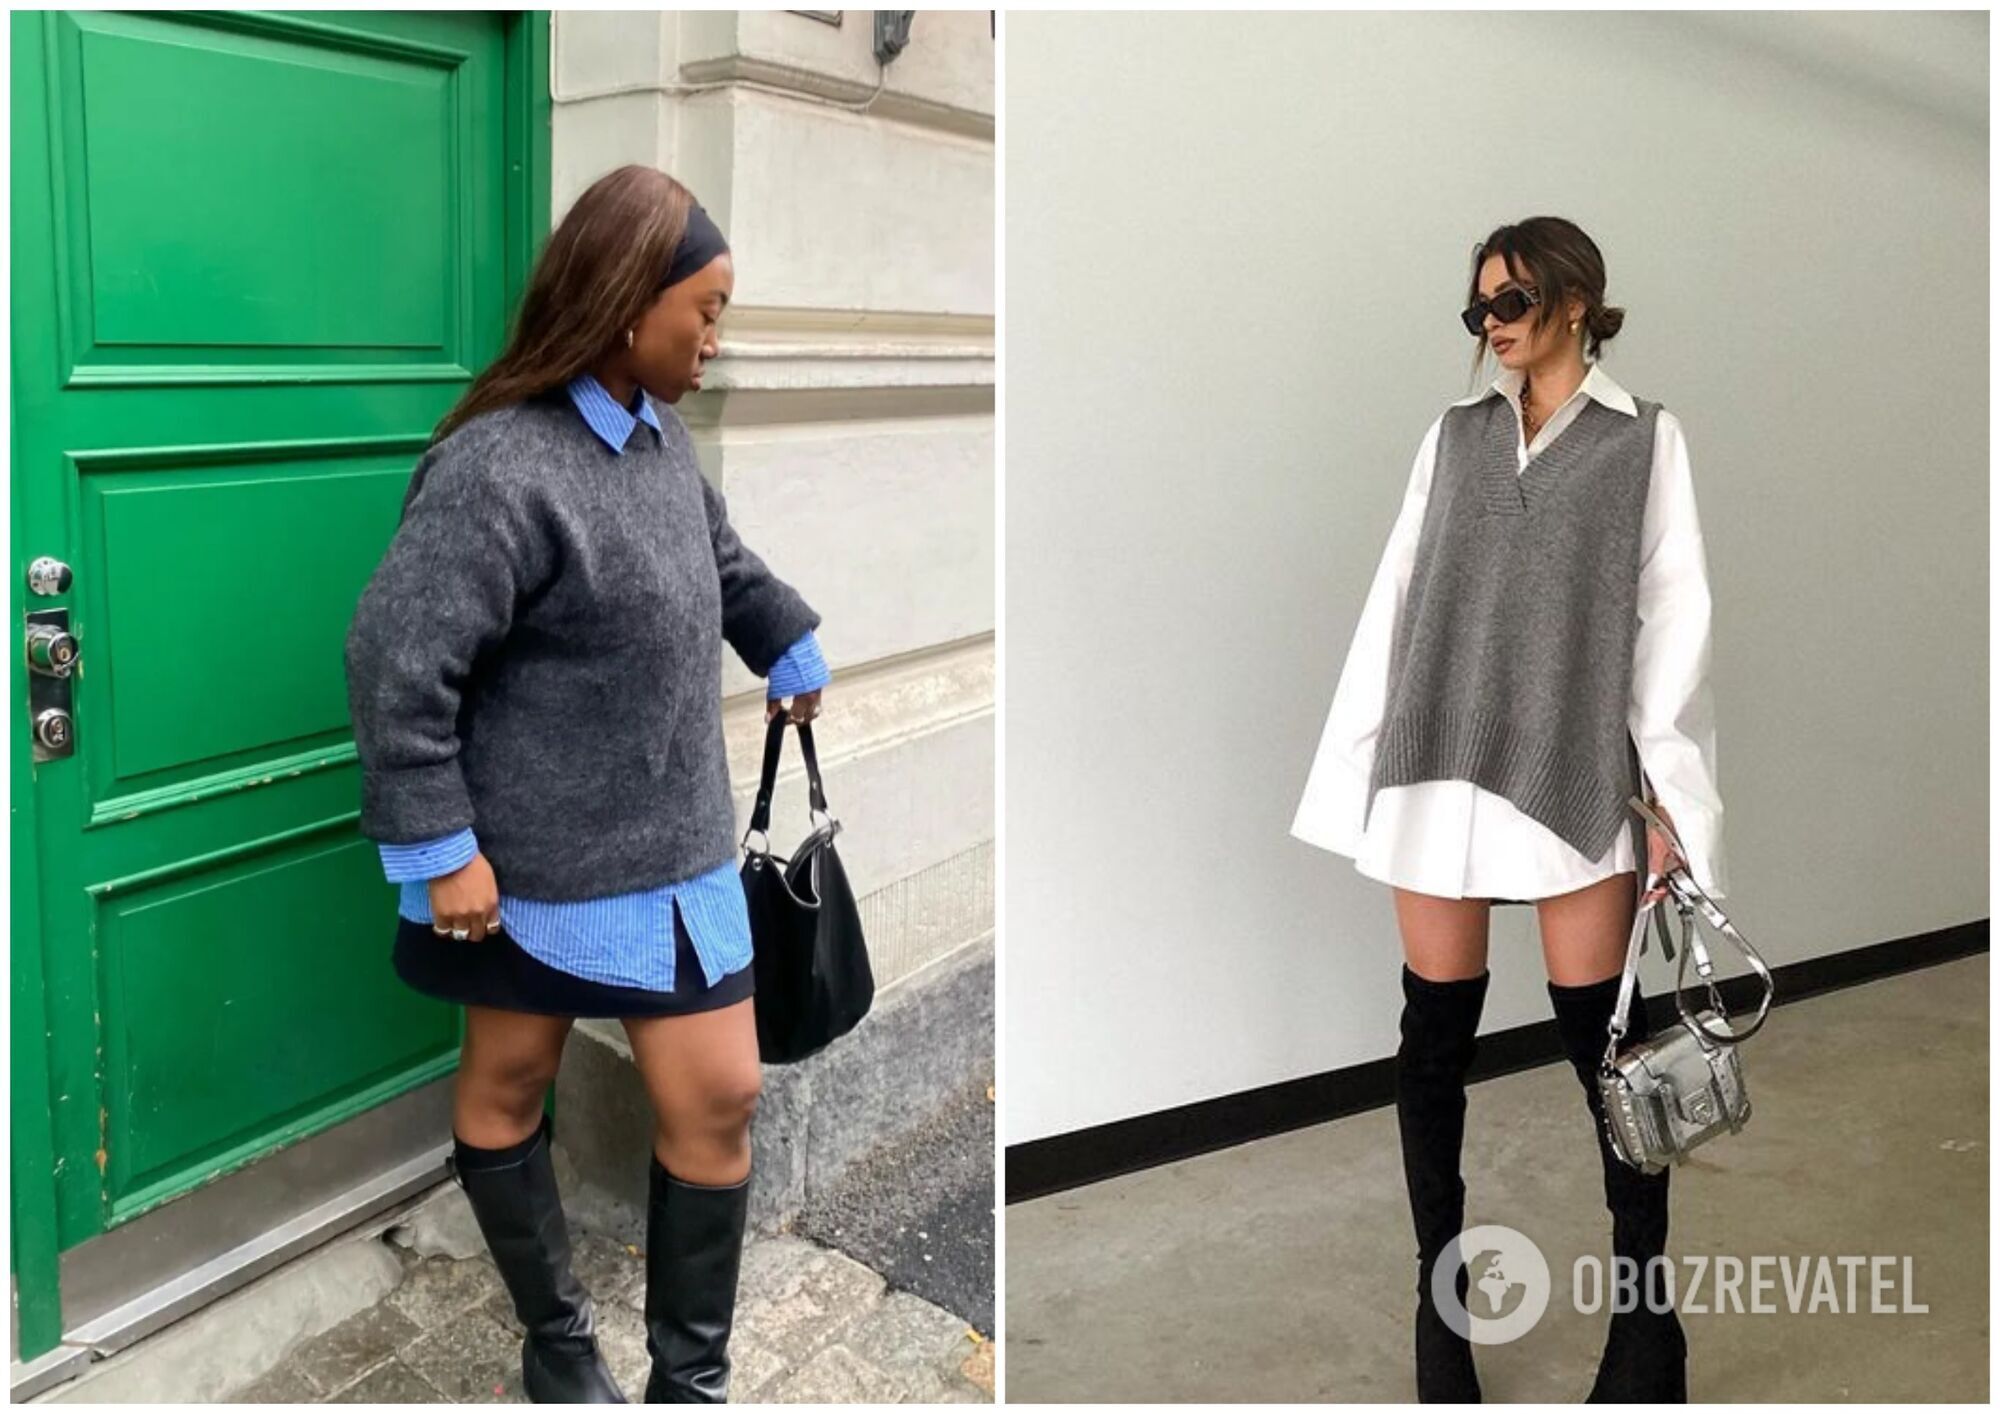 7 anty-trendów noszonych przez kobiety w Londynie, Paryżu i Sztokholmie. Zdjęcie